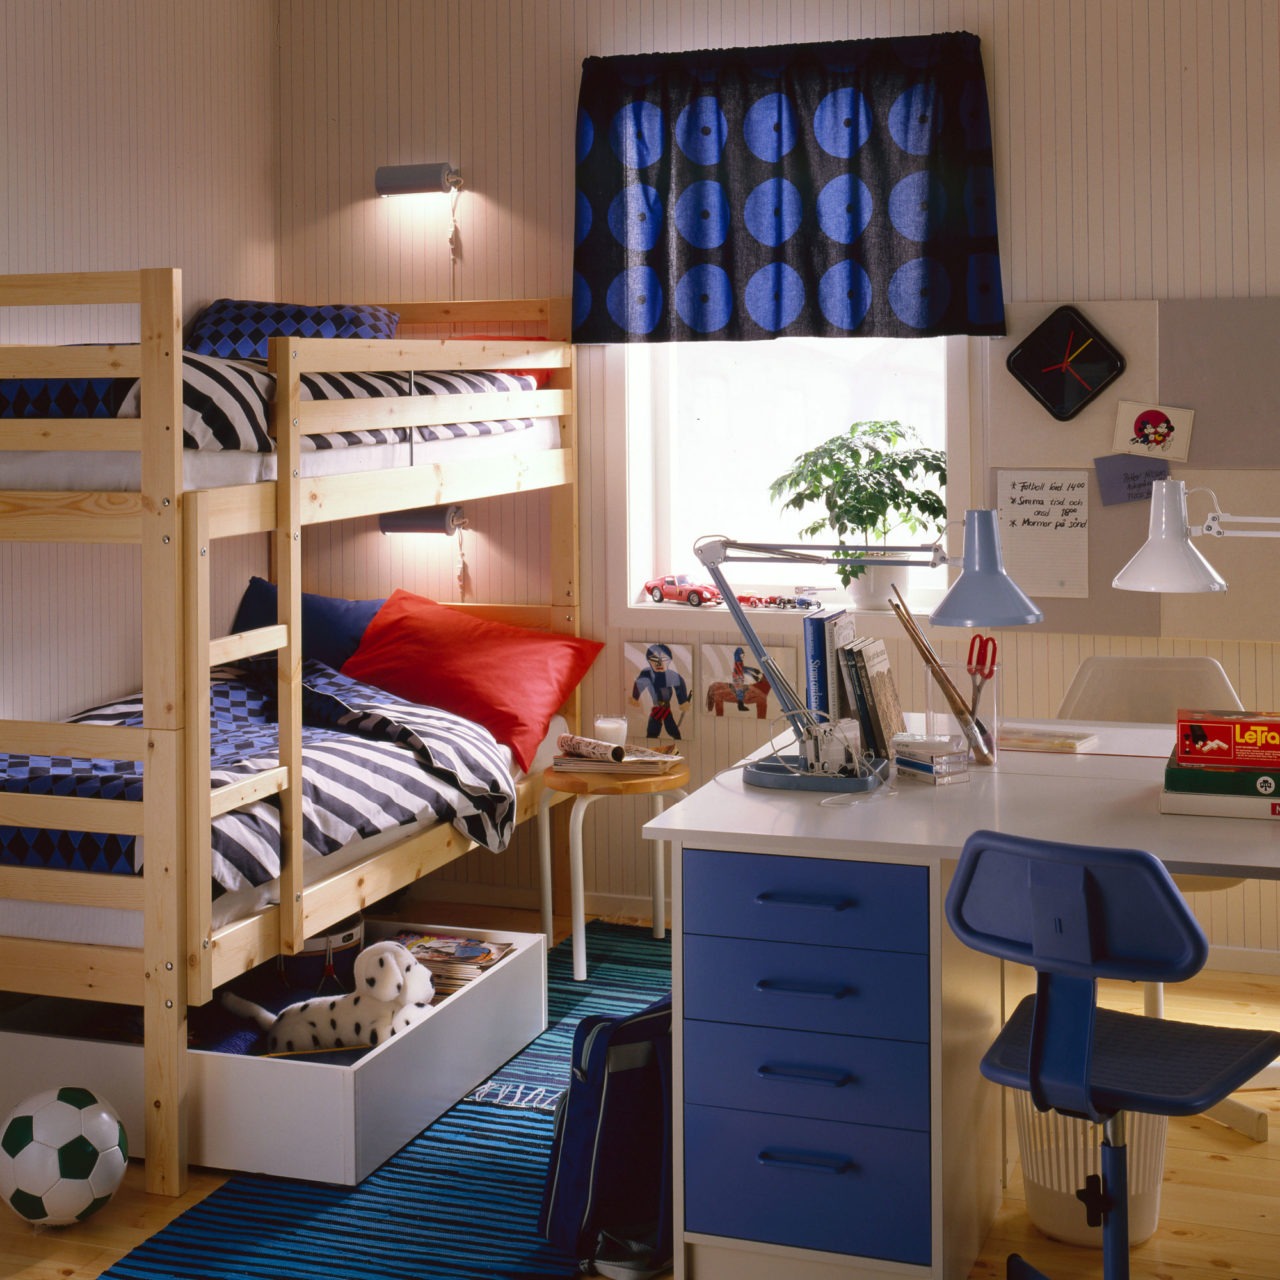 Dormitorio infantil con litera REKDAL y suelo de madera clara. Juguetes desperdigados y escritorio BOJ en blanco.